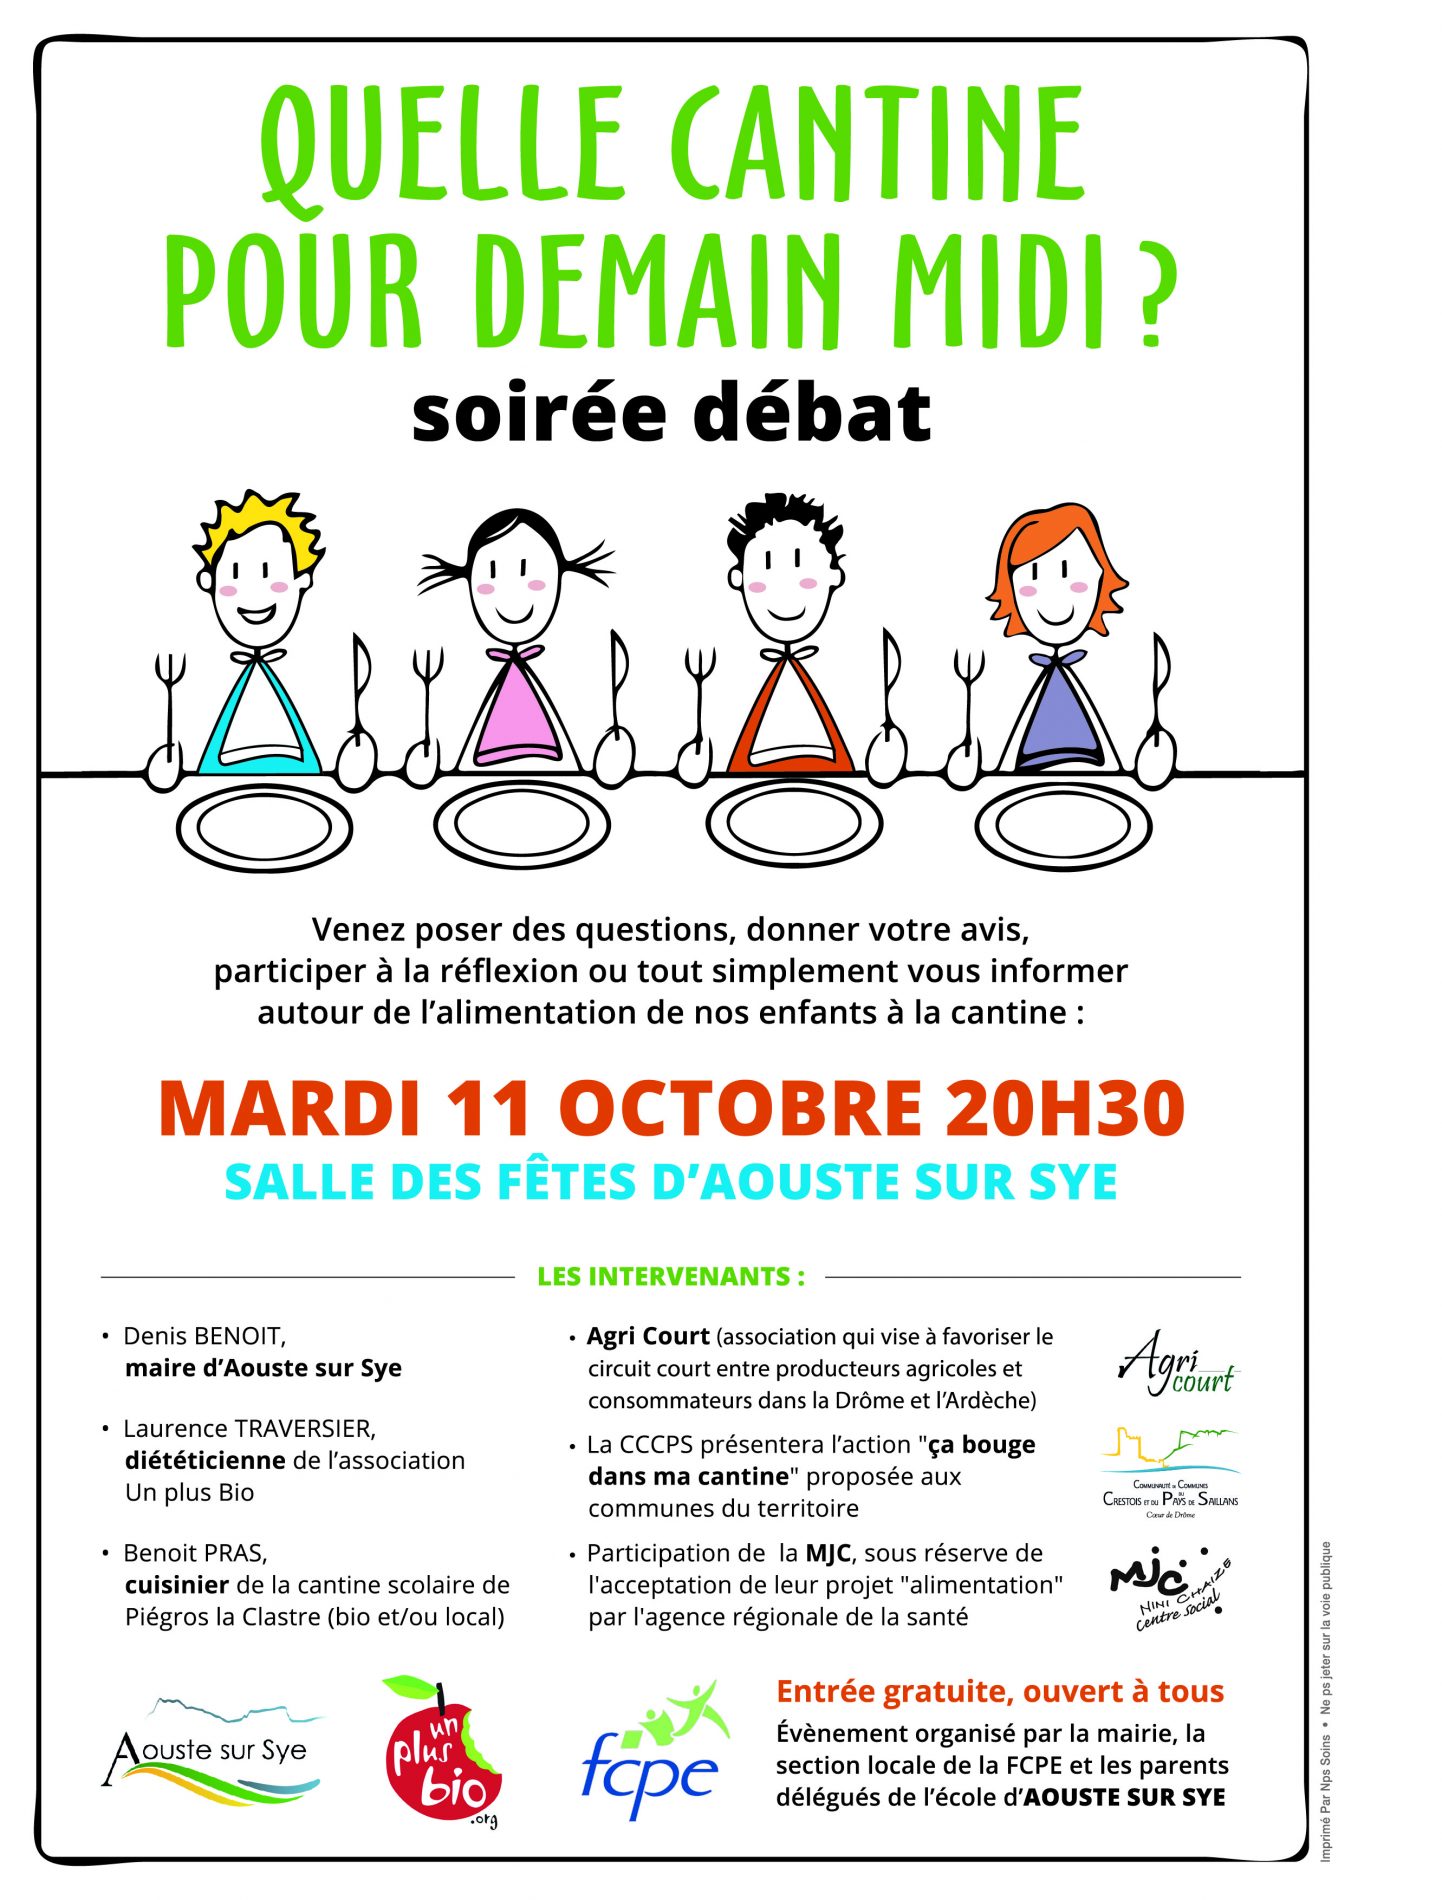 Soirée débat autour de l’alimentation de nos enfants,mardi 11 octobre à 20h30, salle des fêtes d’Aouste-sur-Sye.